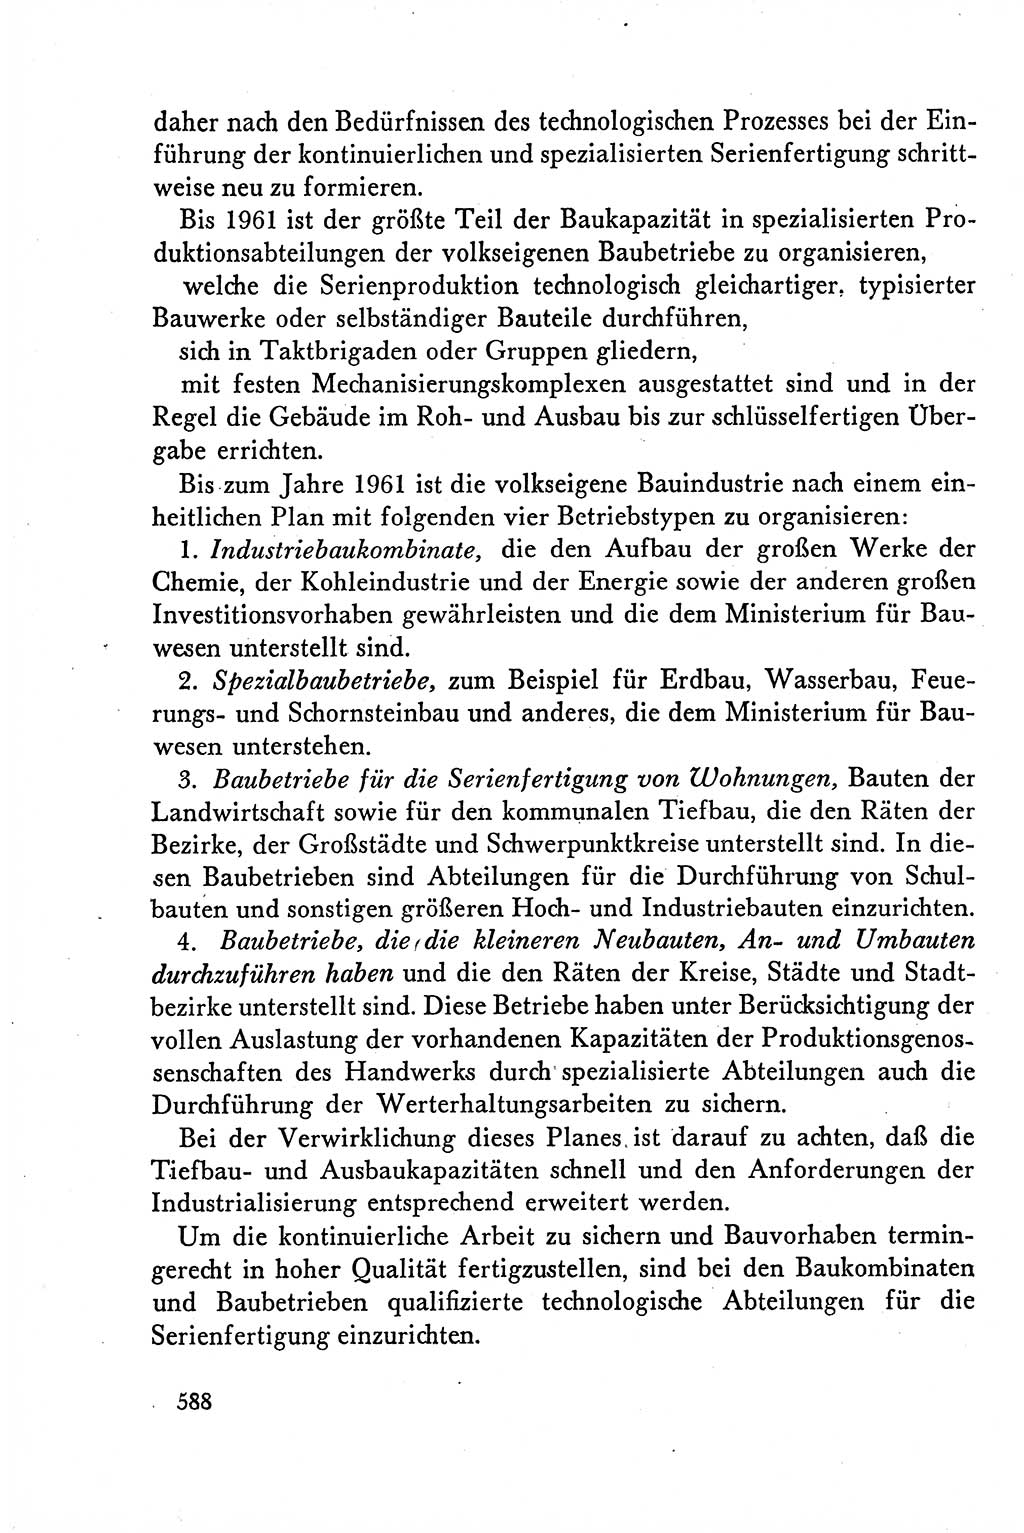 Dokumente der Sozialistischen Einheitspartei Deutschlands (SED) [Deutsche Demokratische Republik (DDR)] 1958-1959, Seite 588 (Dok. SED DDR 1958-1959, S. 588)